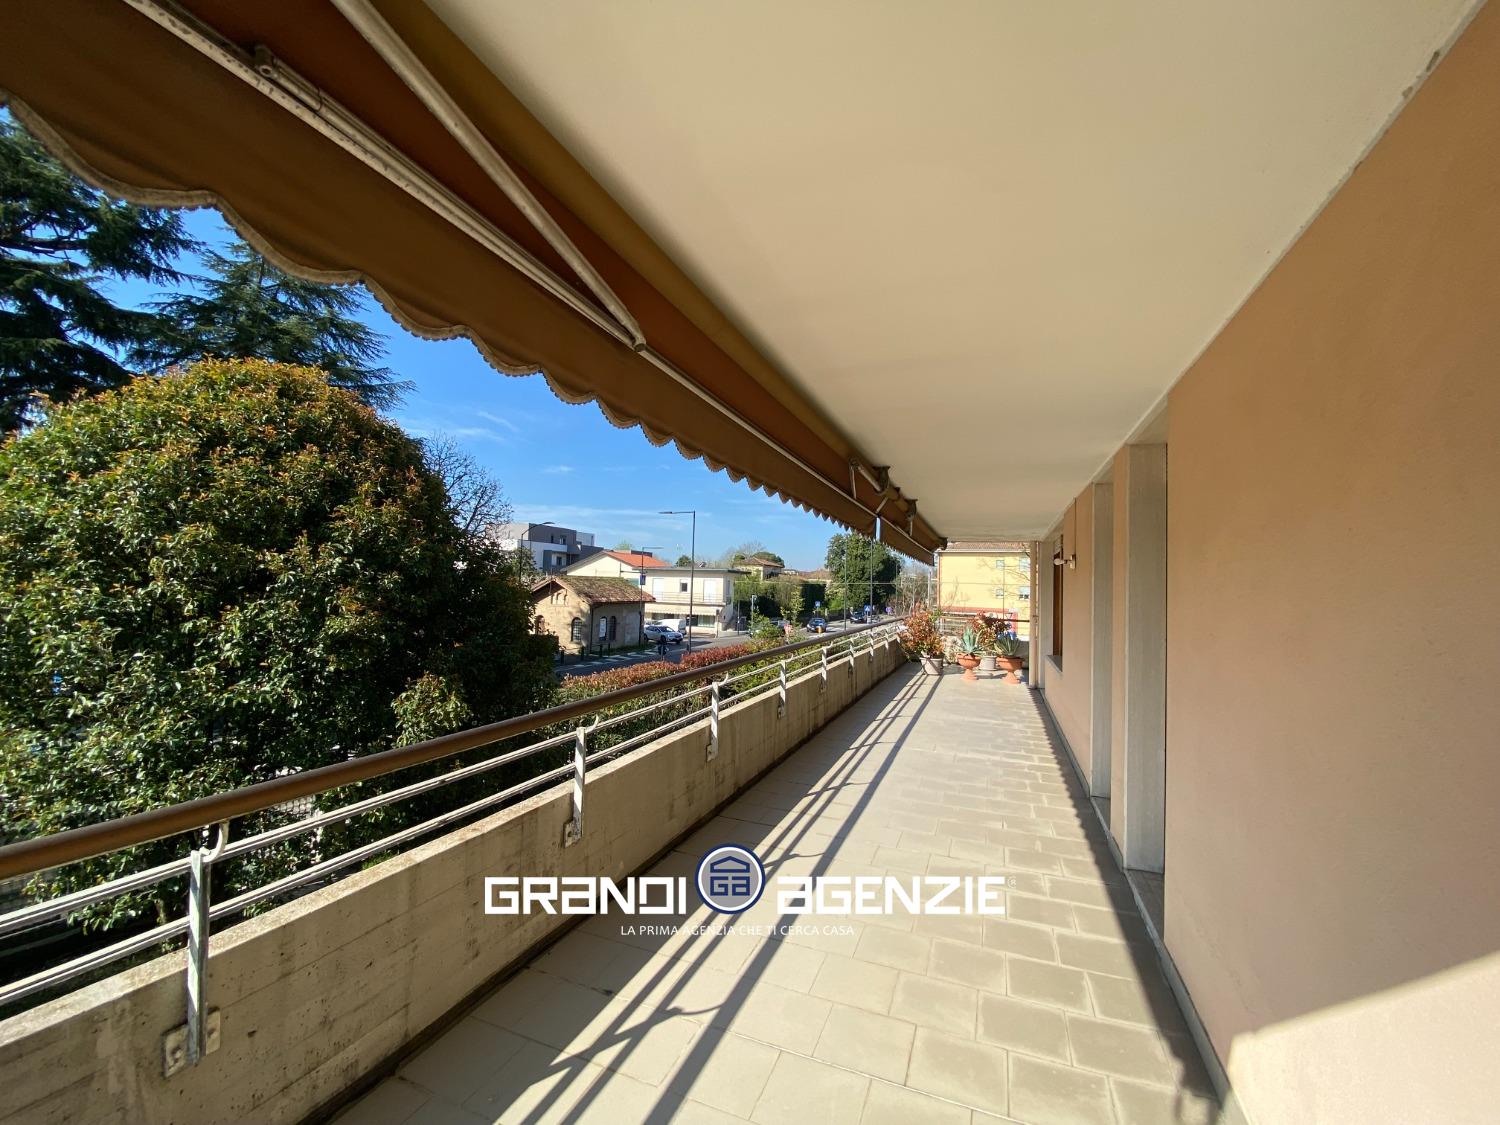 Appartamento in vendita a Treviso, 4 locali, prezzo € 200.000 | PortaleAgenzieImmobiliari.it